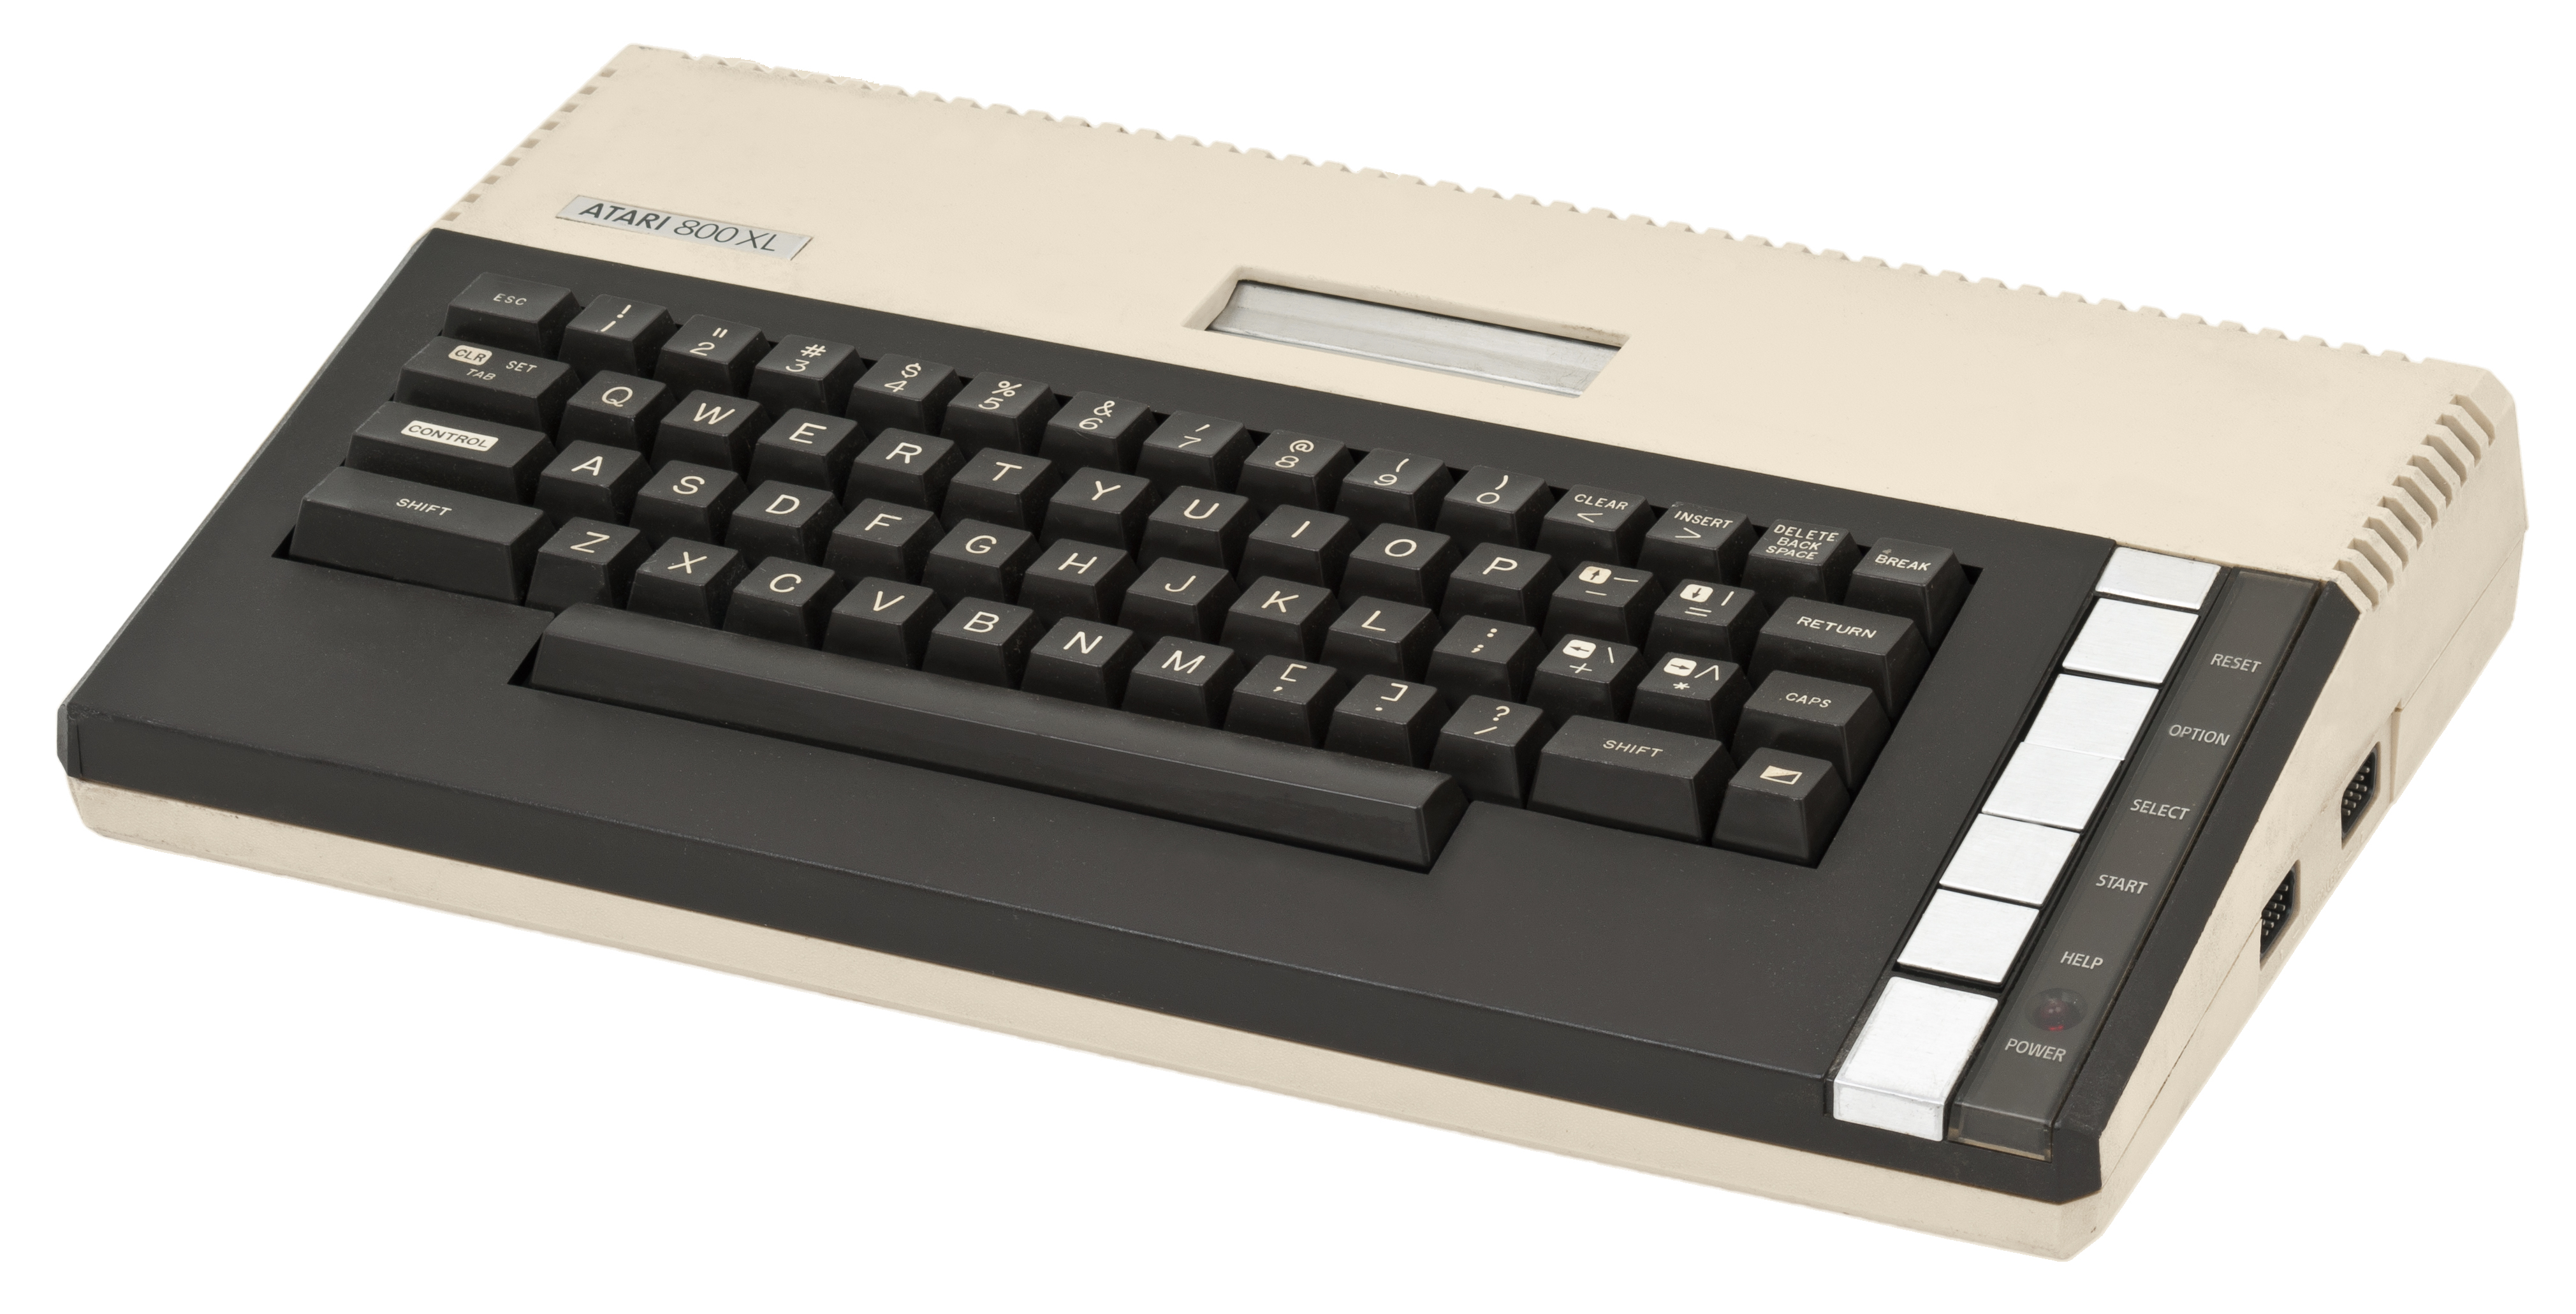 Atari 800XL Personal Computer